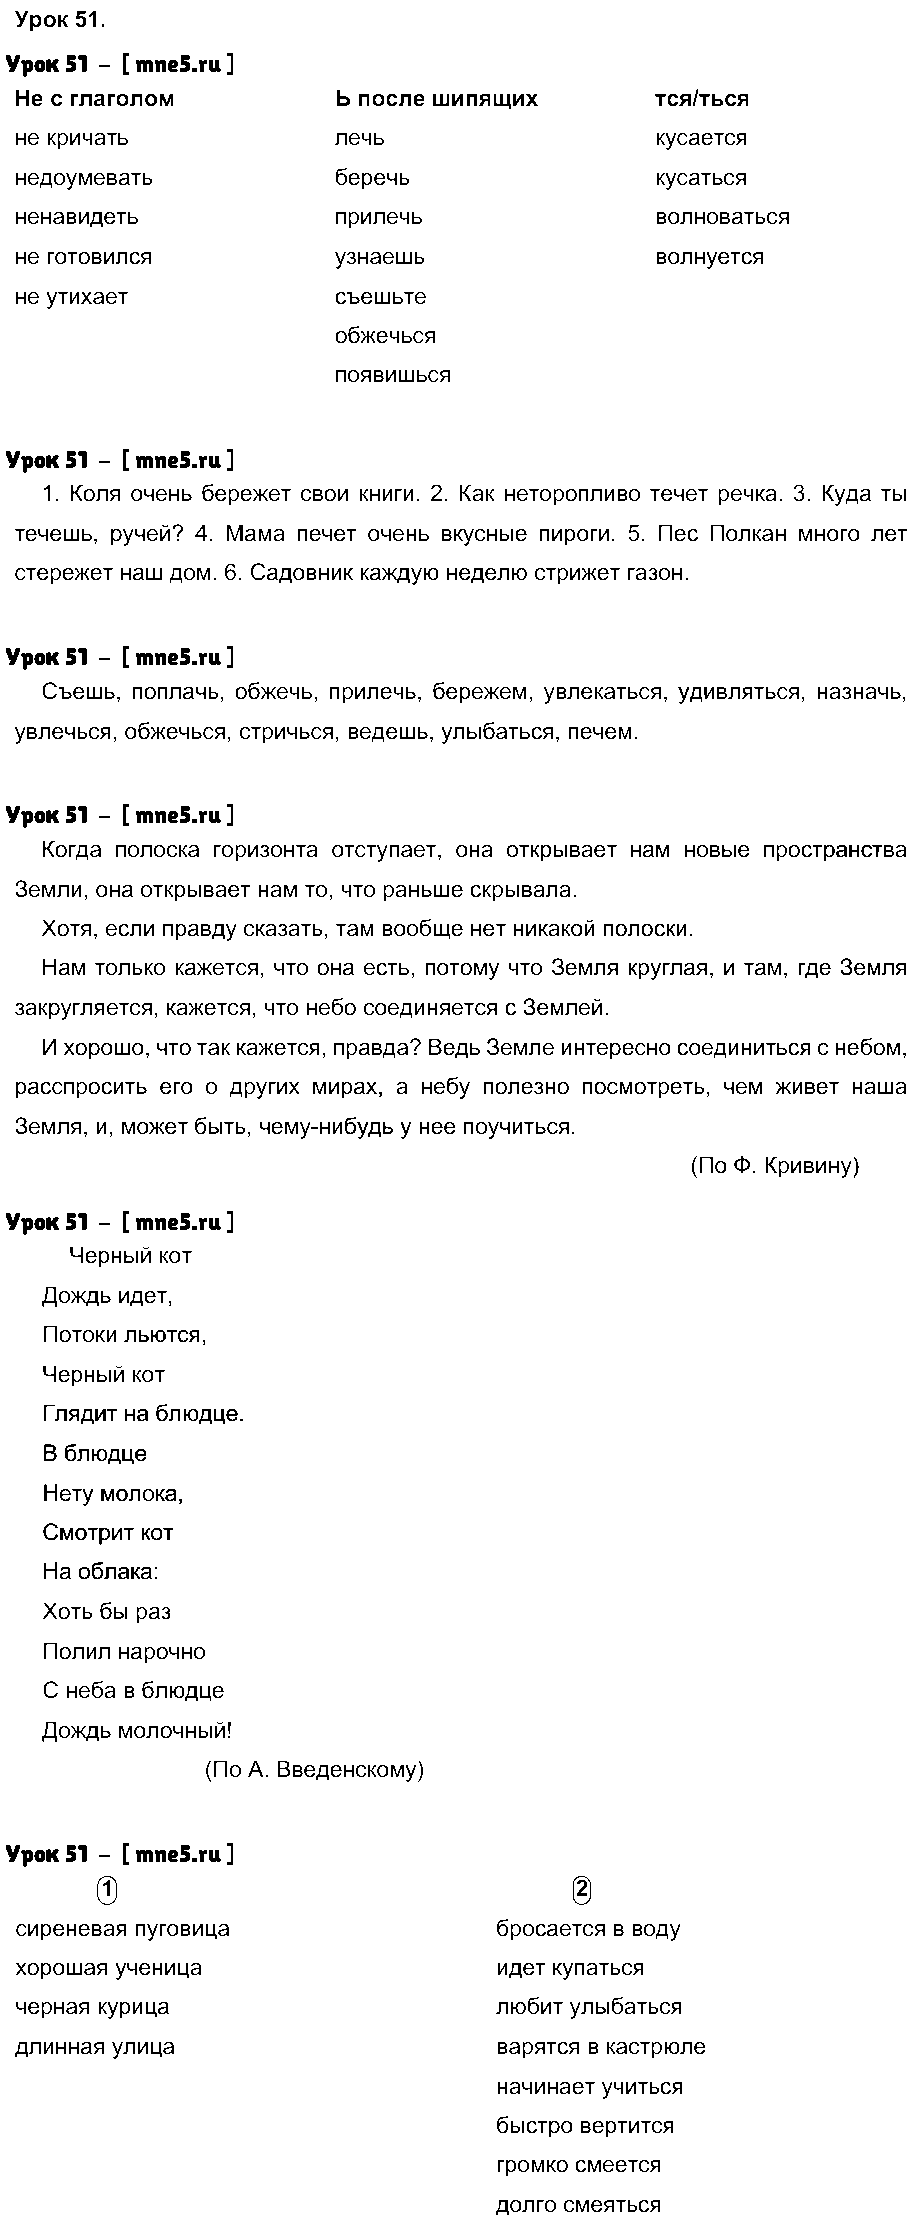 ГДЗ Русский язык 4 класс - Урок 51